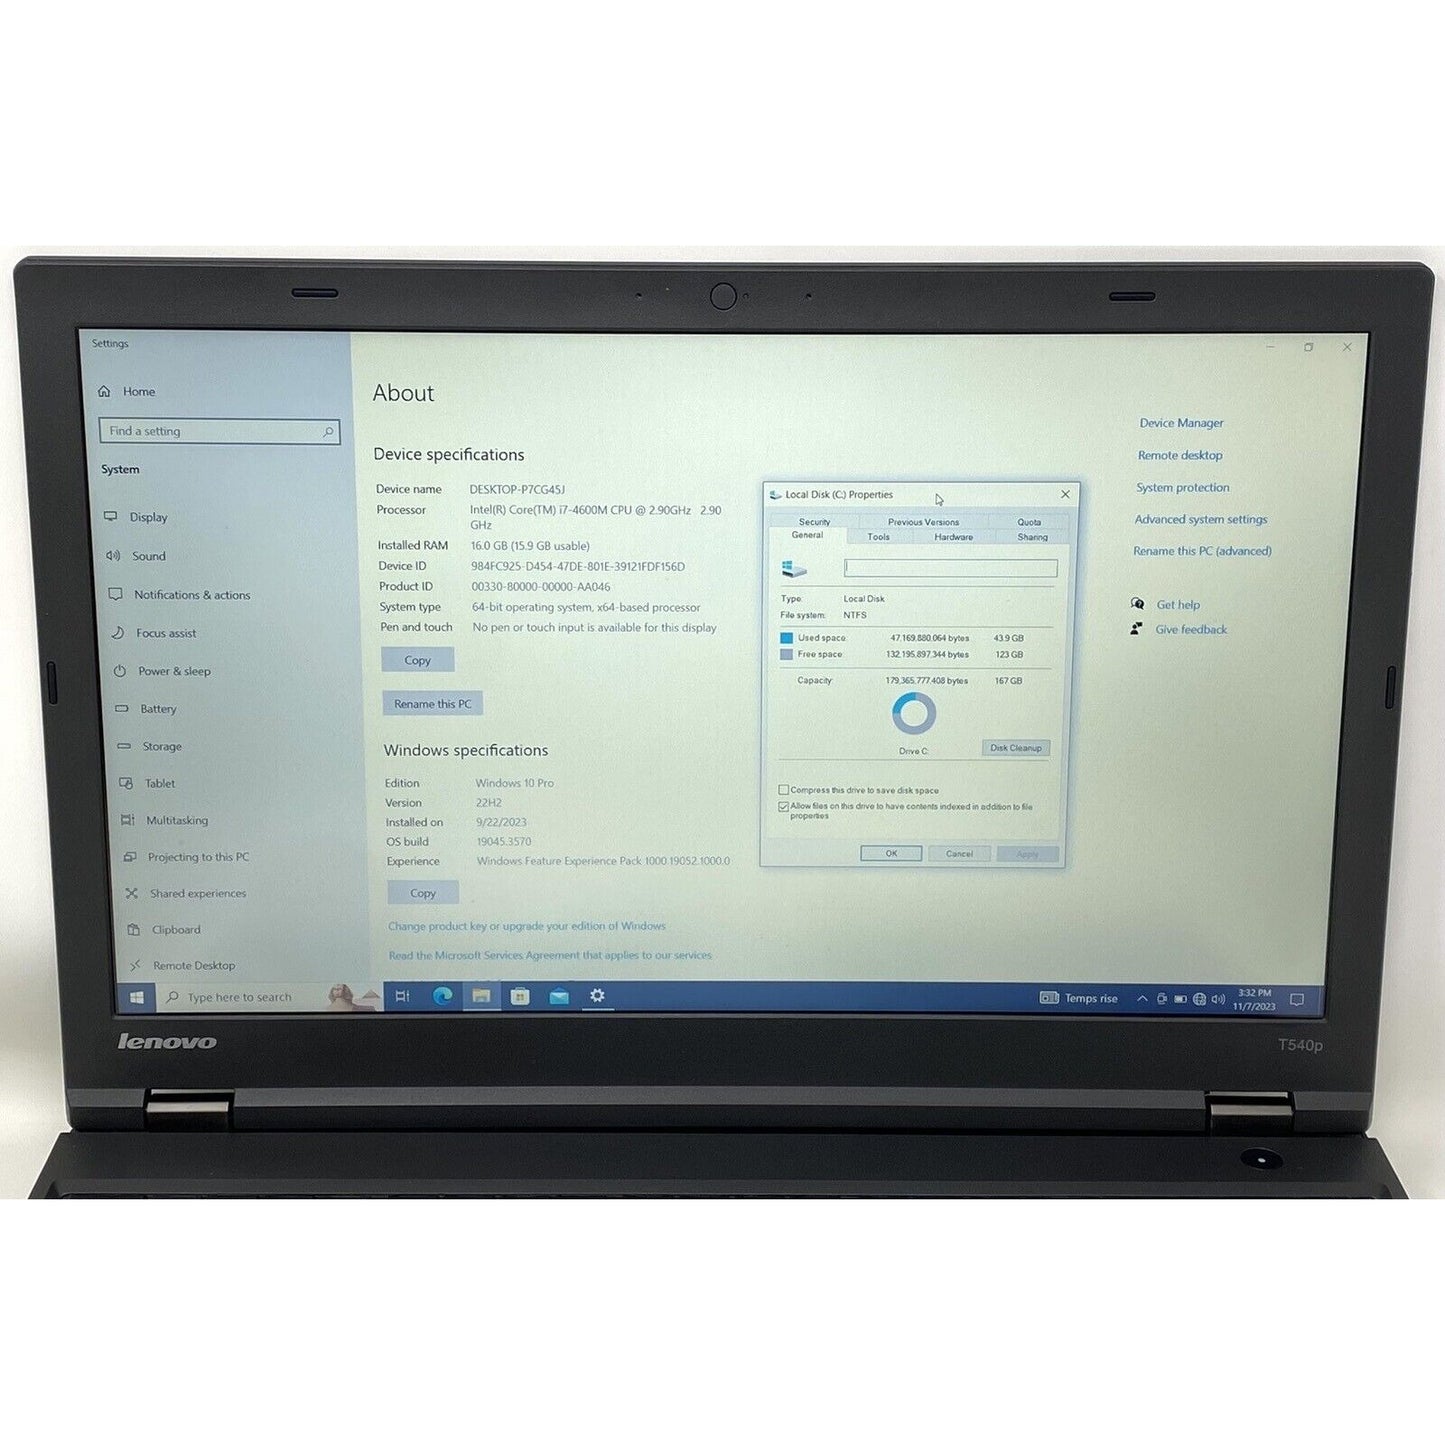 NO BLUETOOTH - Lenovo ThinkPad T540p 20BF-S0UD01 Laptop 16GB RAM 180GB 2.5” SSD